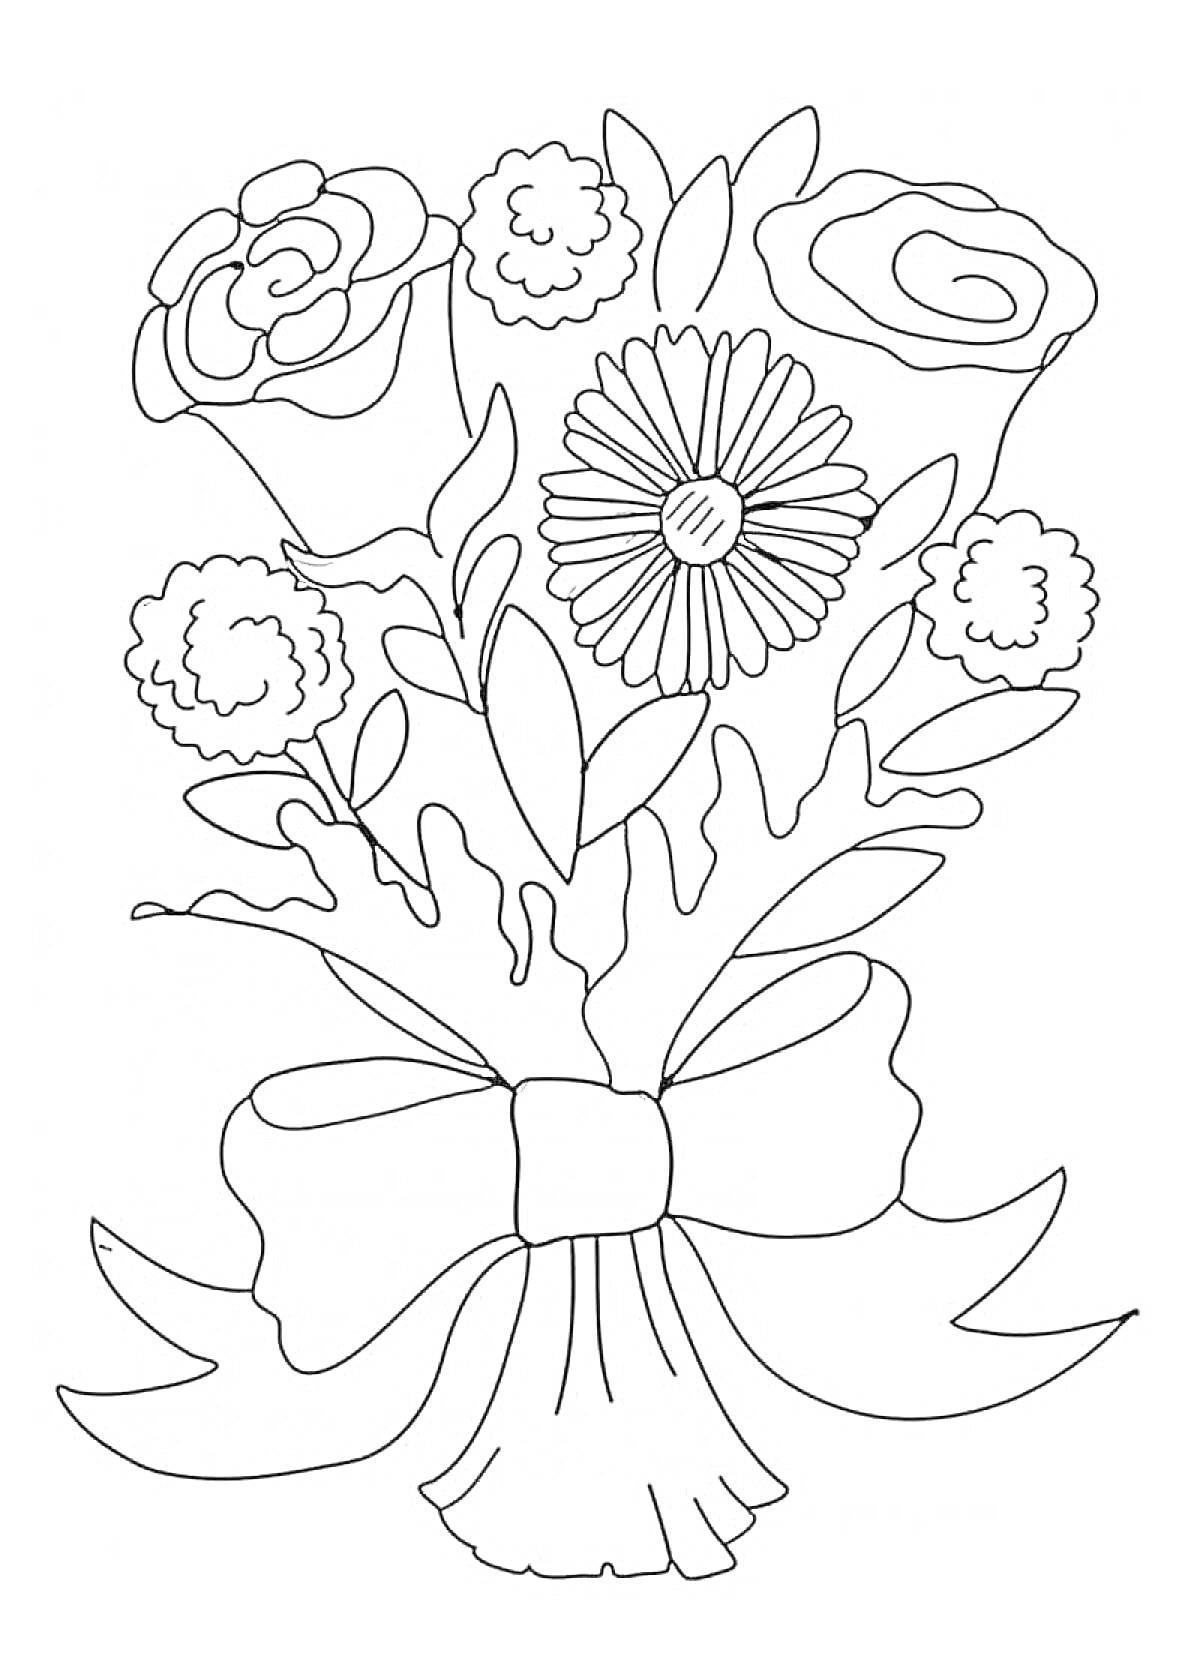 Раскраска букет с розами и ромашкой, перевязанный бантом